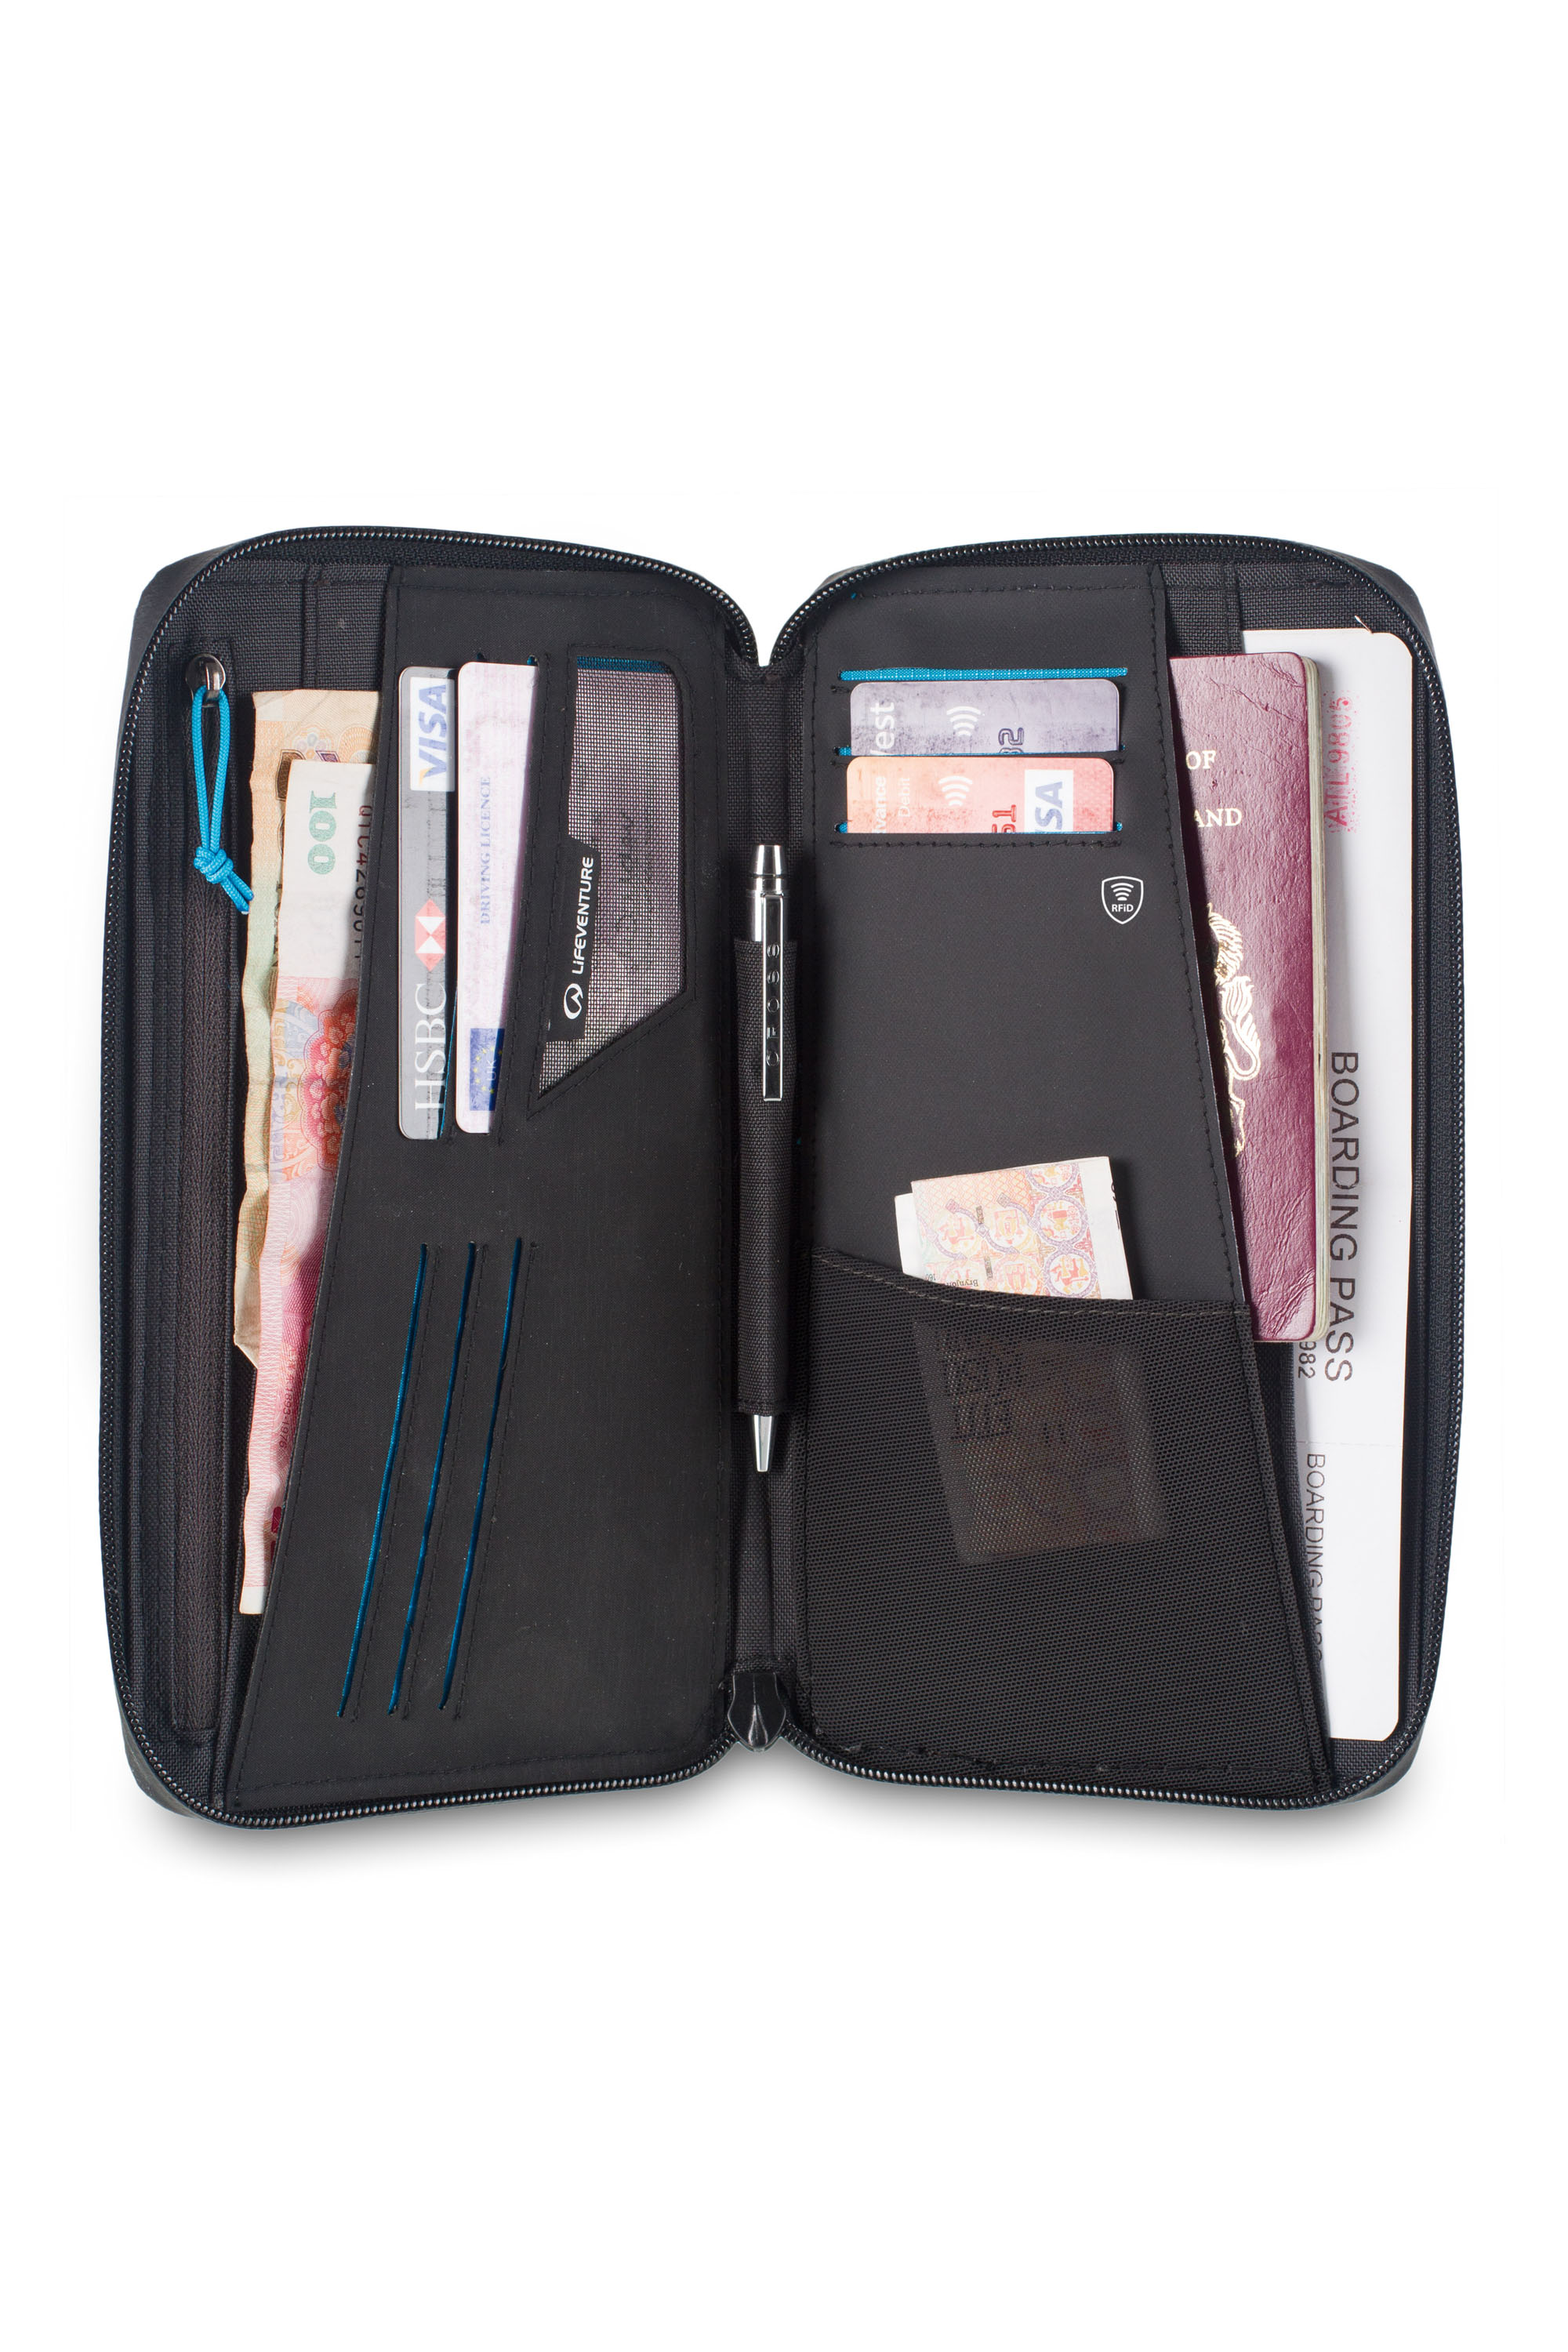 Lifeventure RFID Document Wallet Sicher ist sicher! Langfinger sind nicht nur scharf auf Bares. Datenverluste können noch mehr Schaden anrichten, als ein paar Scheine zu verlieren. Der RFID-Blocker in dem Wallet schützt Kredit- und EC-Karten vor Datenklau. 29,99 Euro 